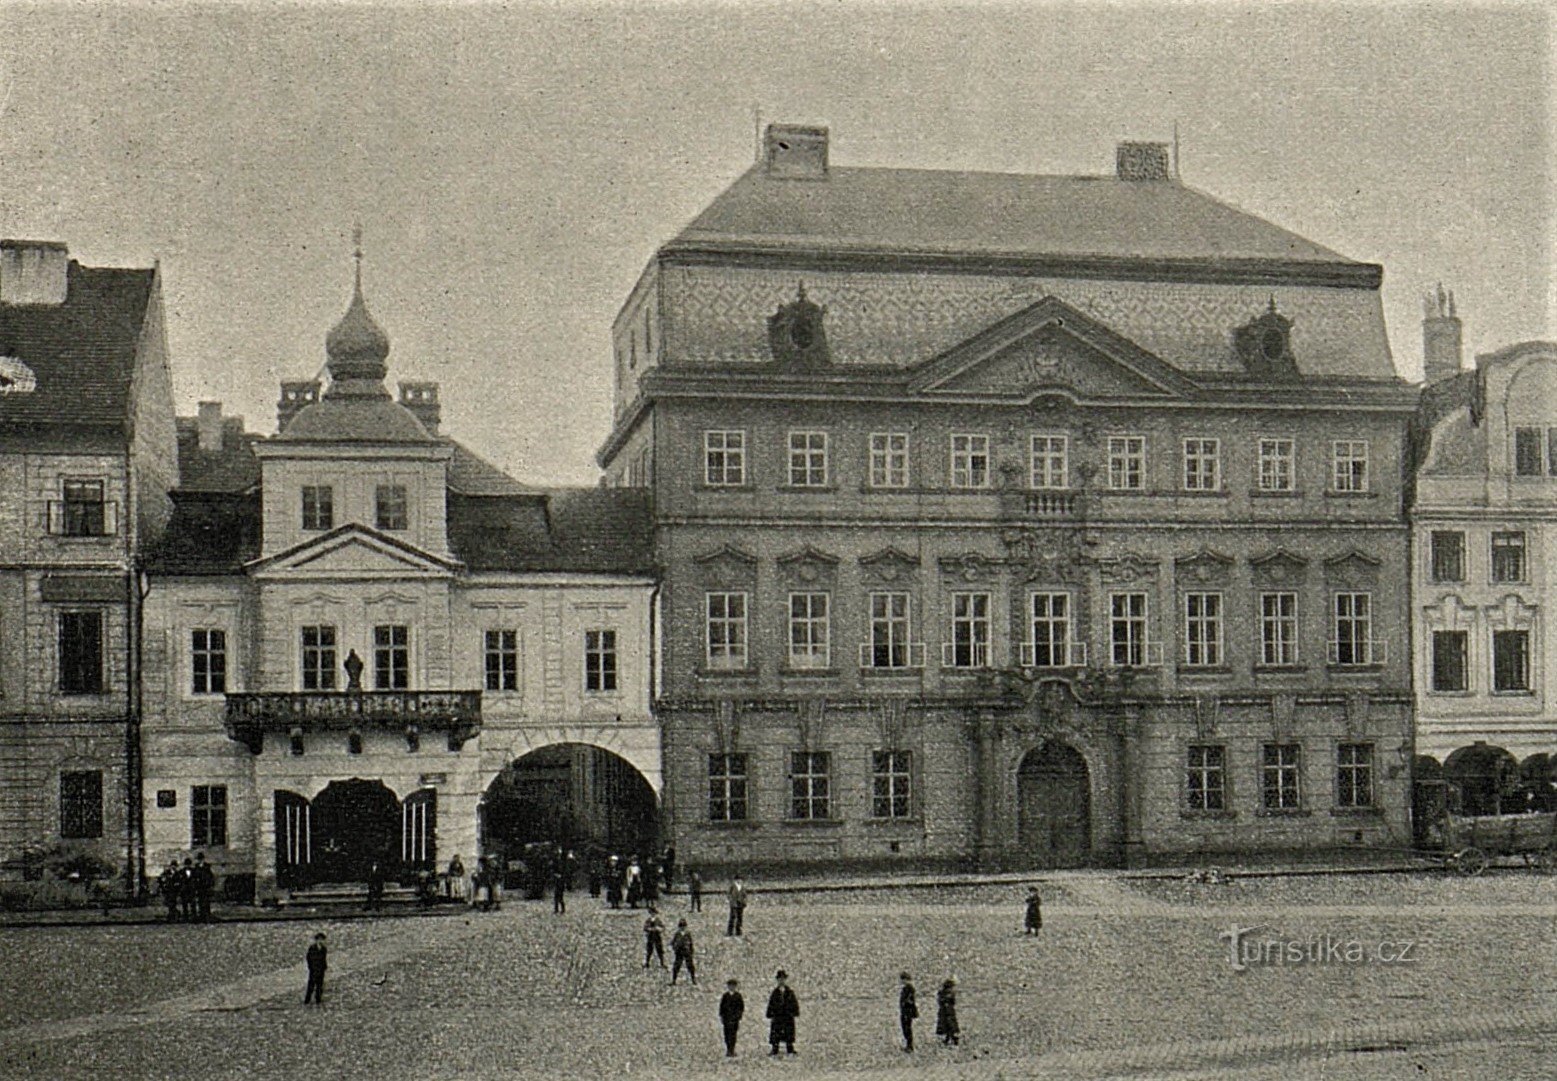 U Špuláků house and bishop's residence in Hradec Králové before 1904